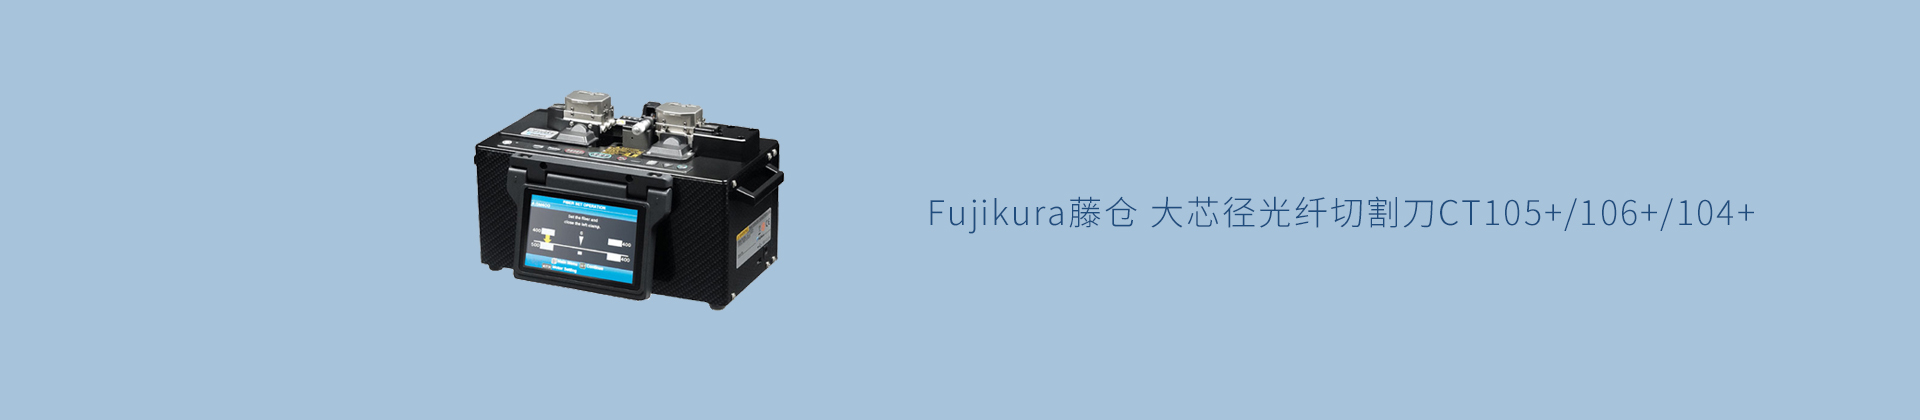 Fujikura藤仓 大芯径光纤切割刀CT105+/106+/104+